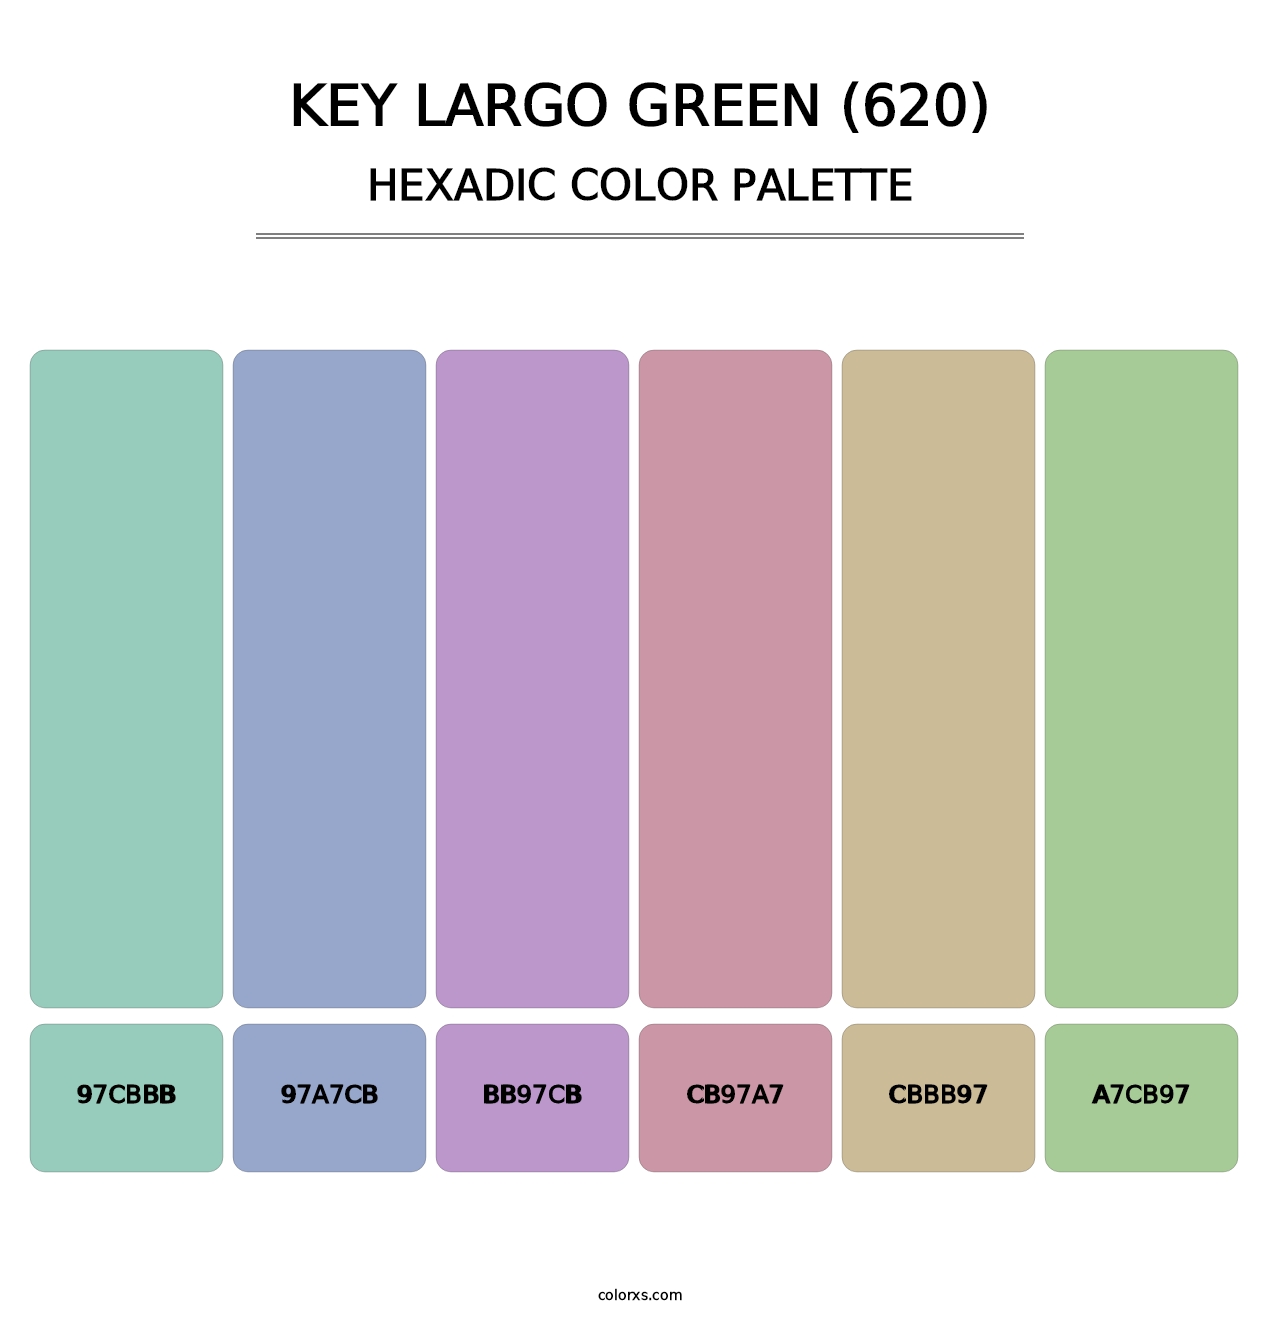 Key Largo Green (620) - Hexadic Color Palette